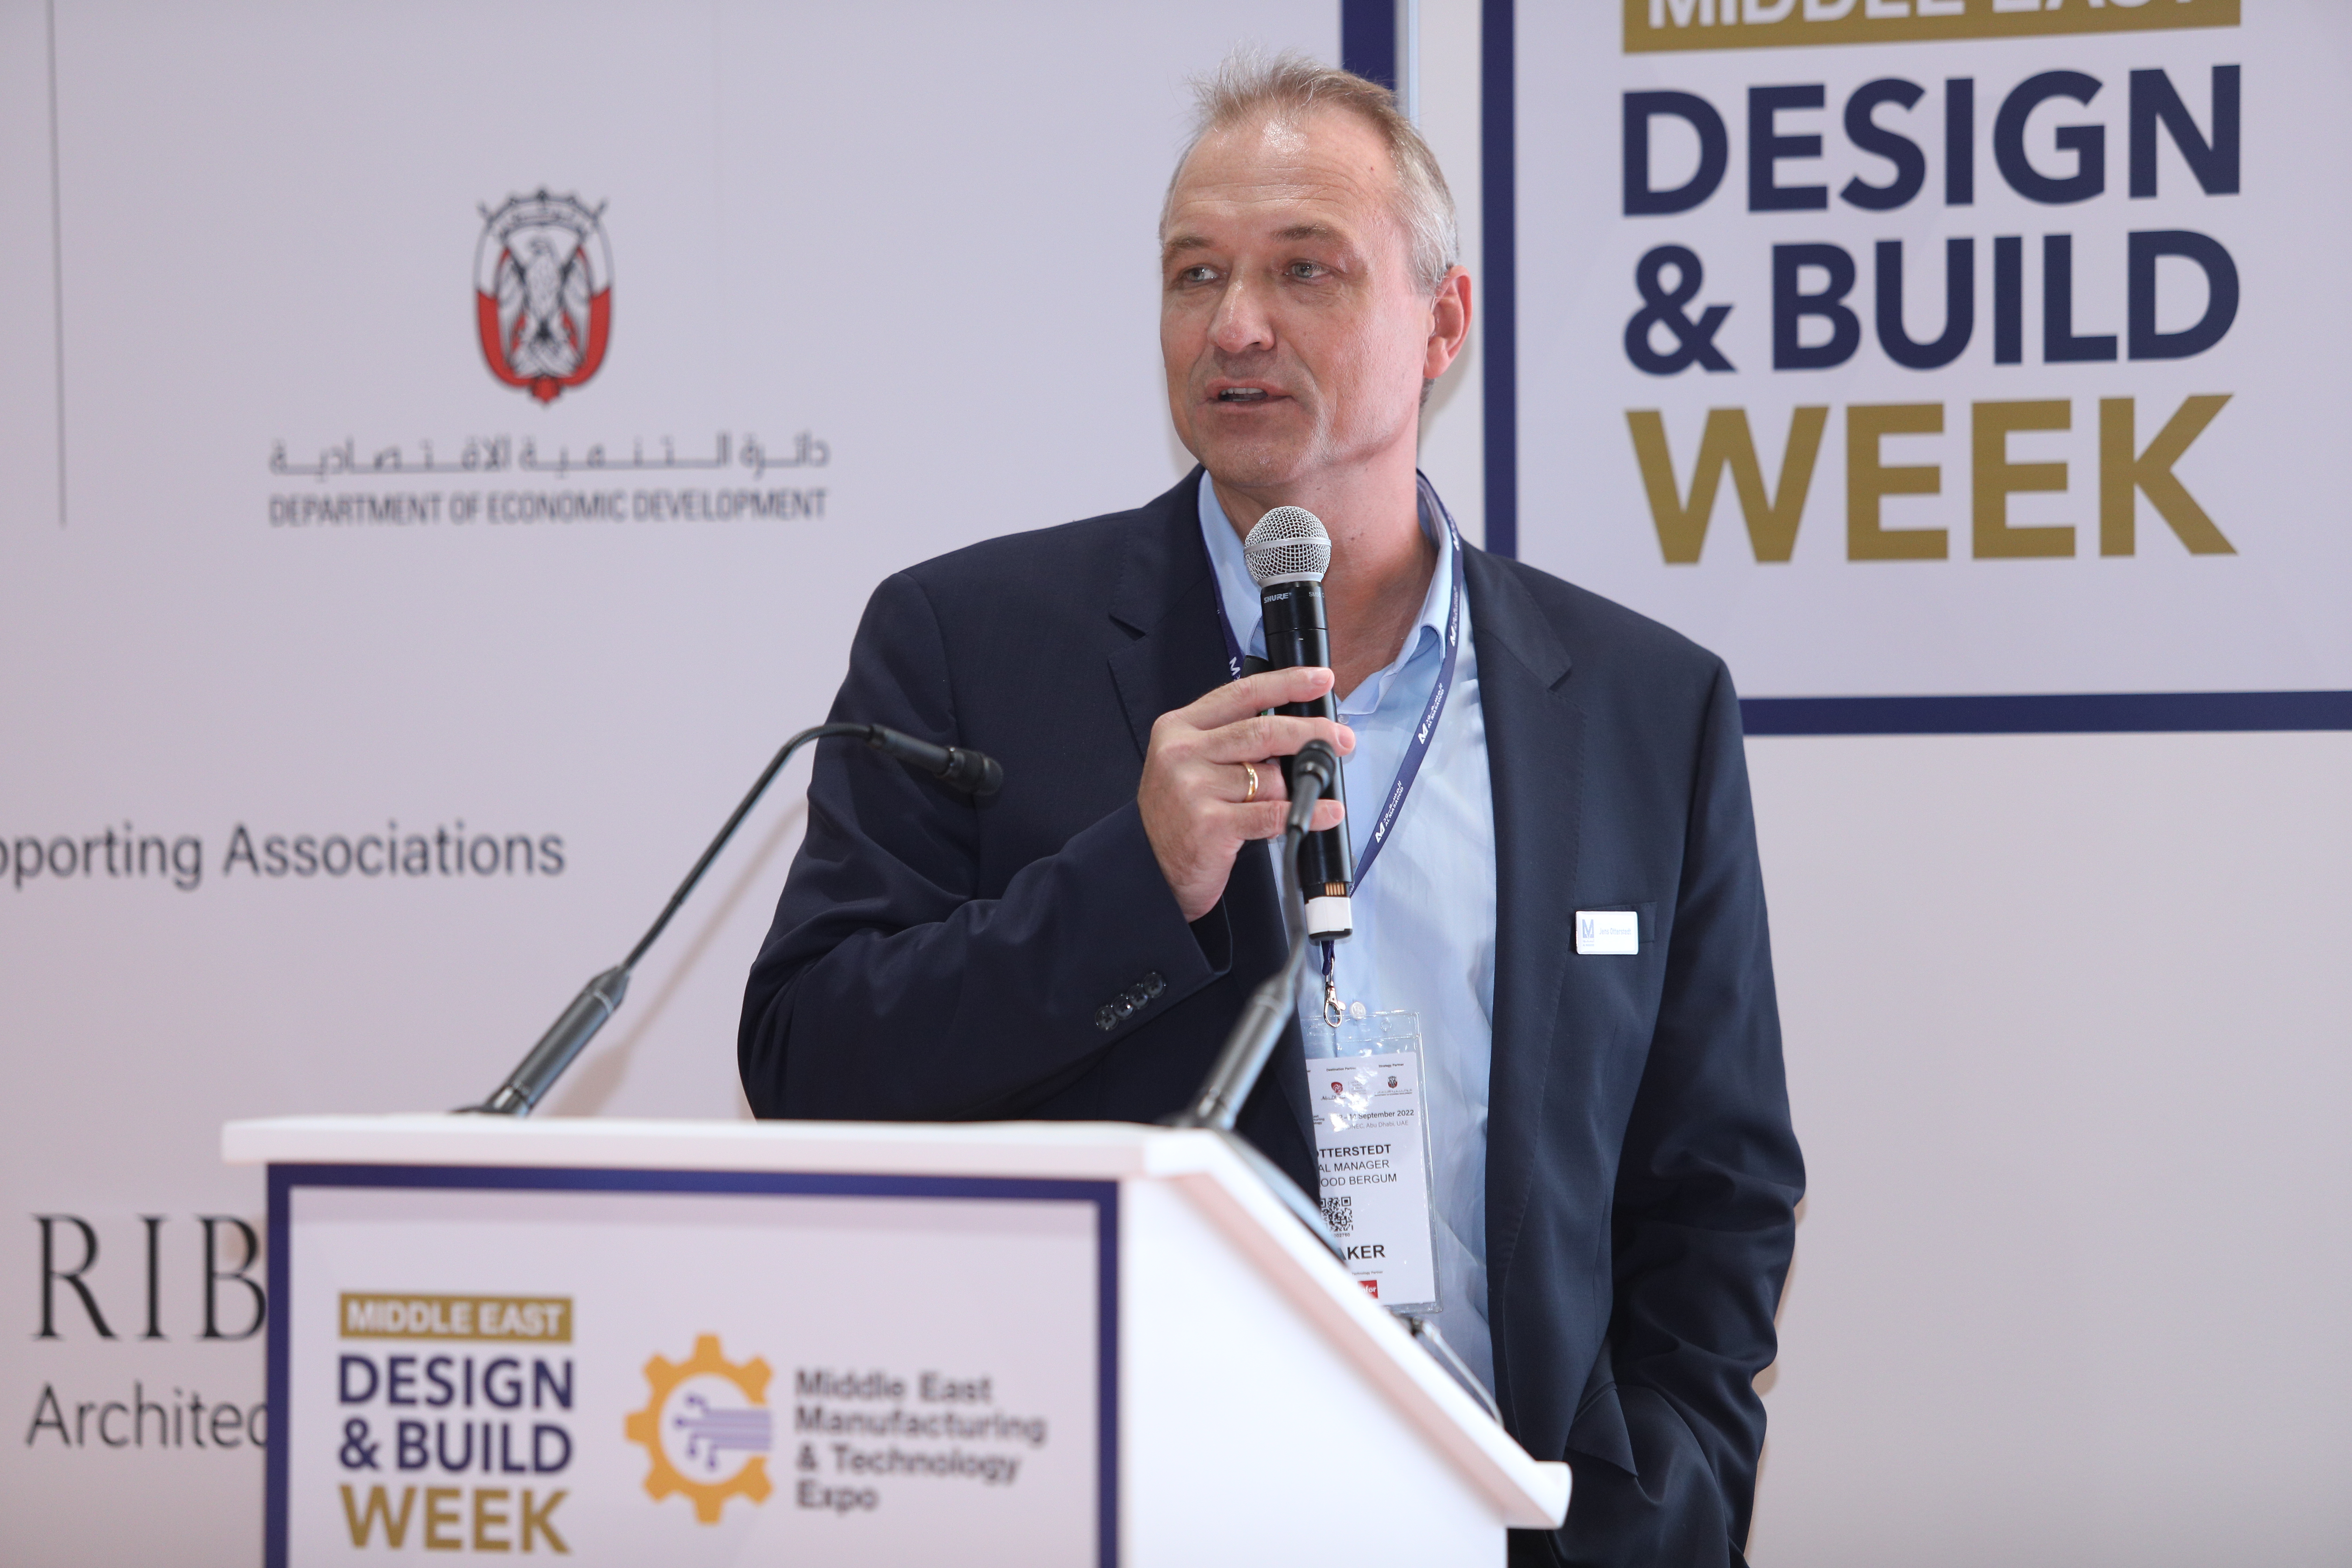 جينس اوتيرستيدت، مدير عام شركة "المسعود برغوم"، يستعرض أهمية البناء المستدام في "معرض الشرق الأوسط للتصنيع والتكنولوجيا"